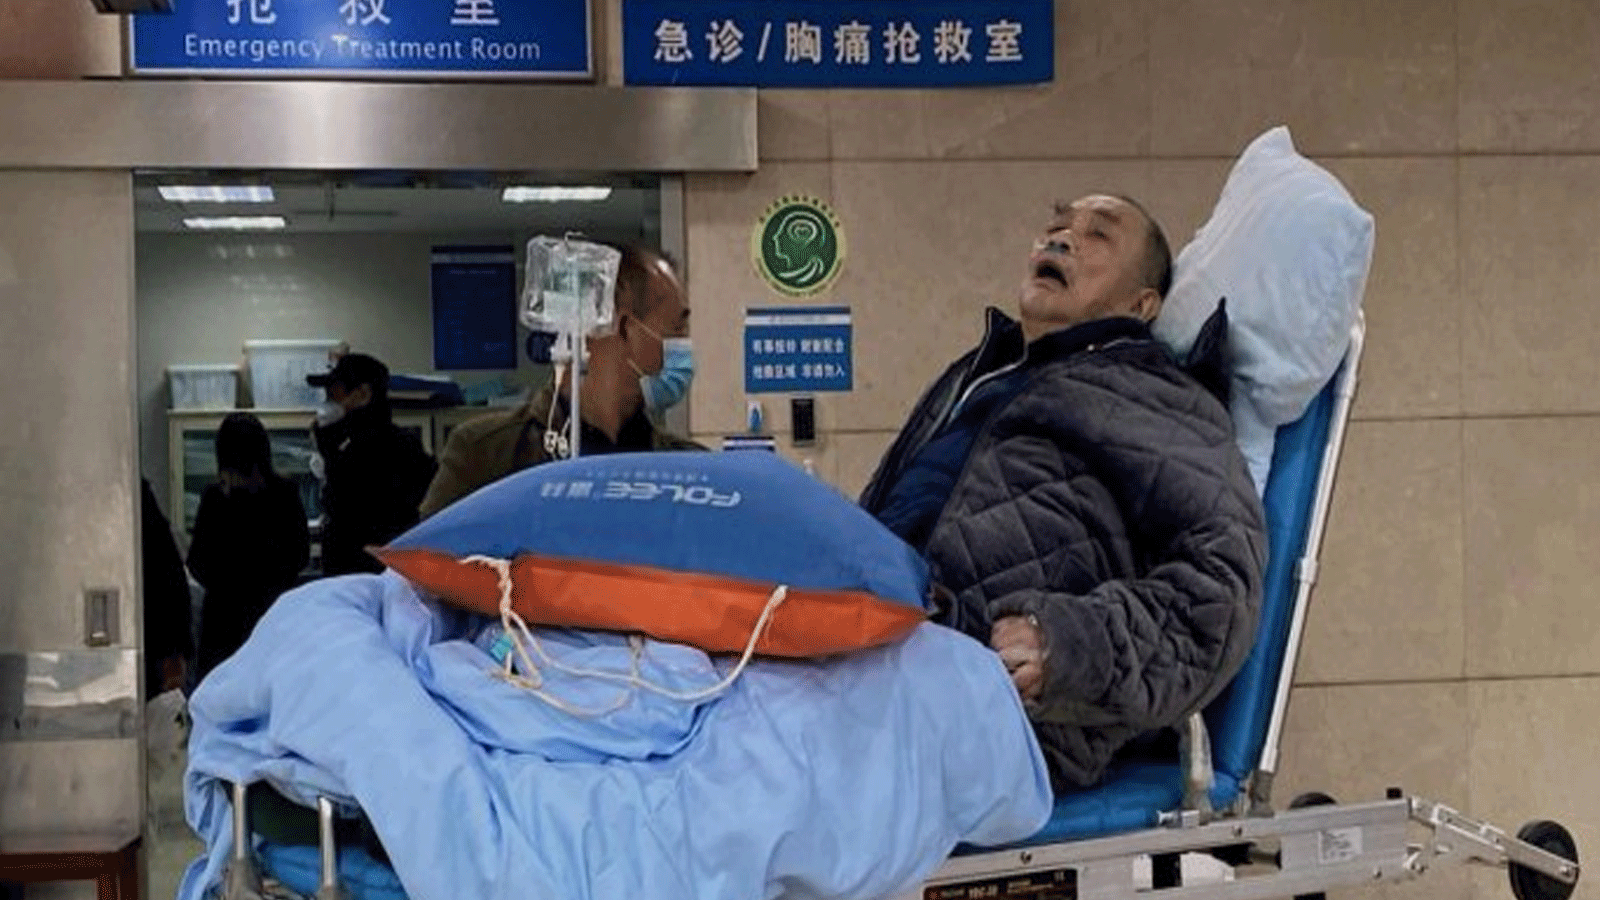 مريض مسن مصاب بفيروس كوفيد -19 مستلقي على نقالة في جناح الطوارئ في أول مستشفى تابع لجامعة تشونغتشينغ الطبية في مدينة تشونغتشينغ جنوب غرب الصين.